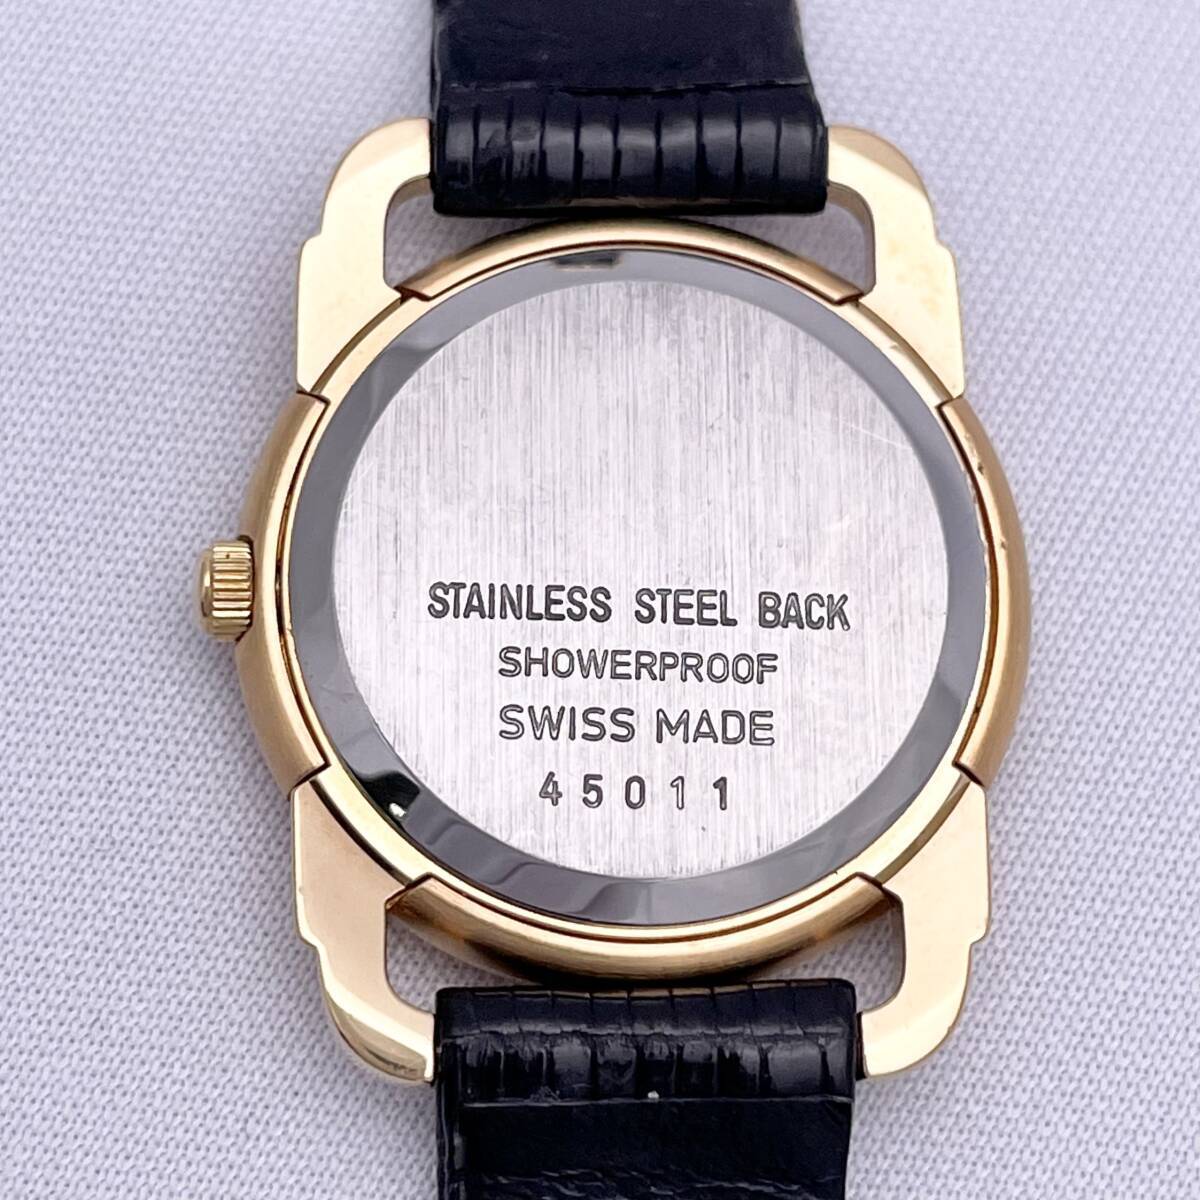 SACOM サコム ブレゲ針 SWISS MADE スイス製 45011 腕時計 ウォッチ クォーツ quartz デイト 金 ゴールド P88の画像8